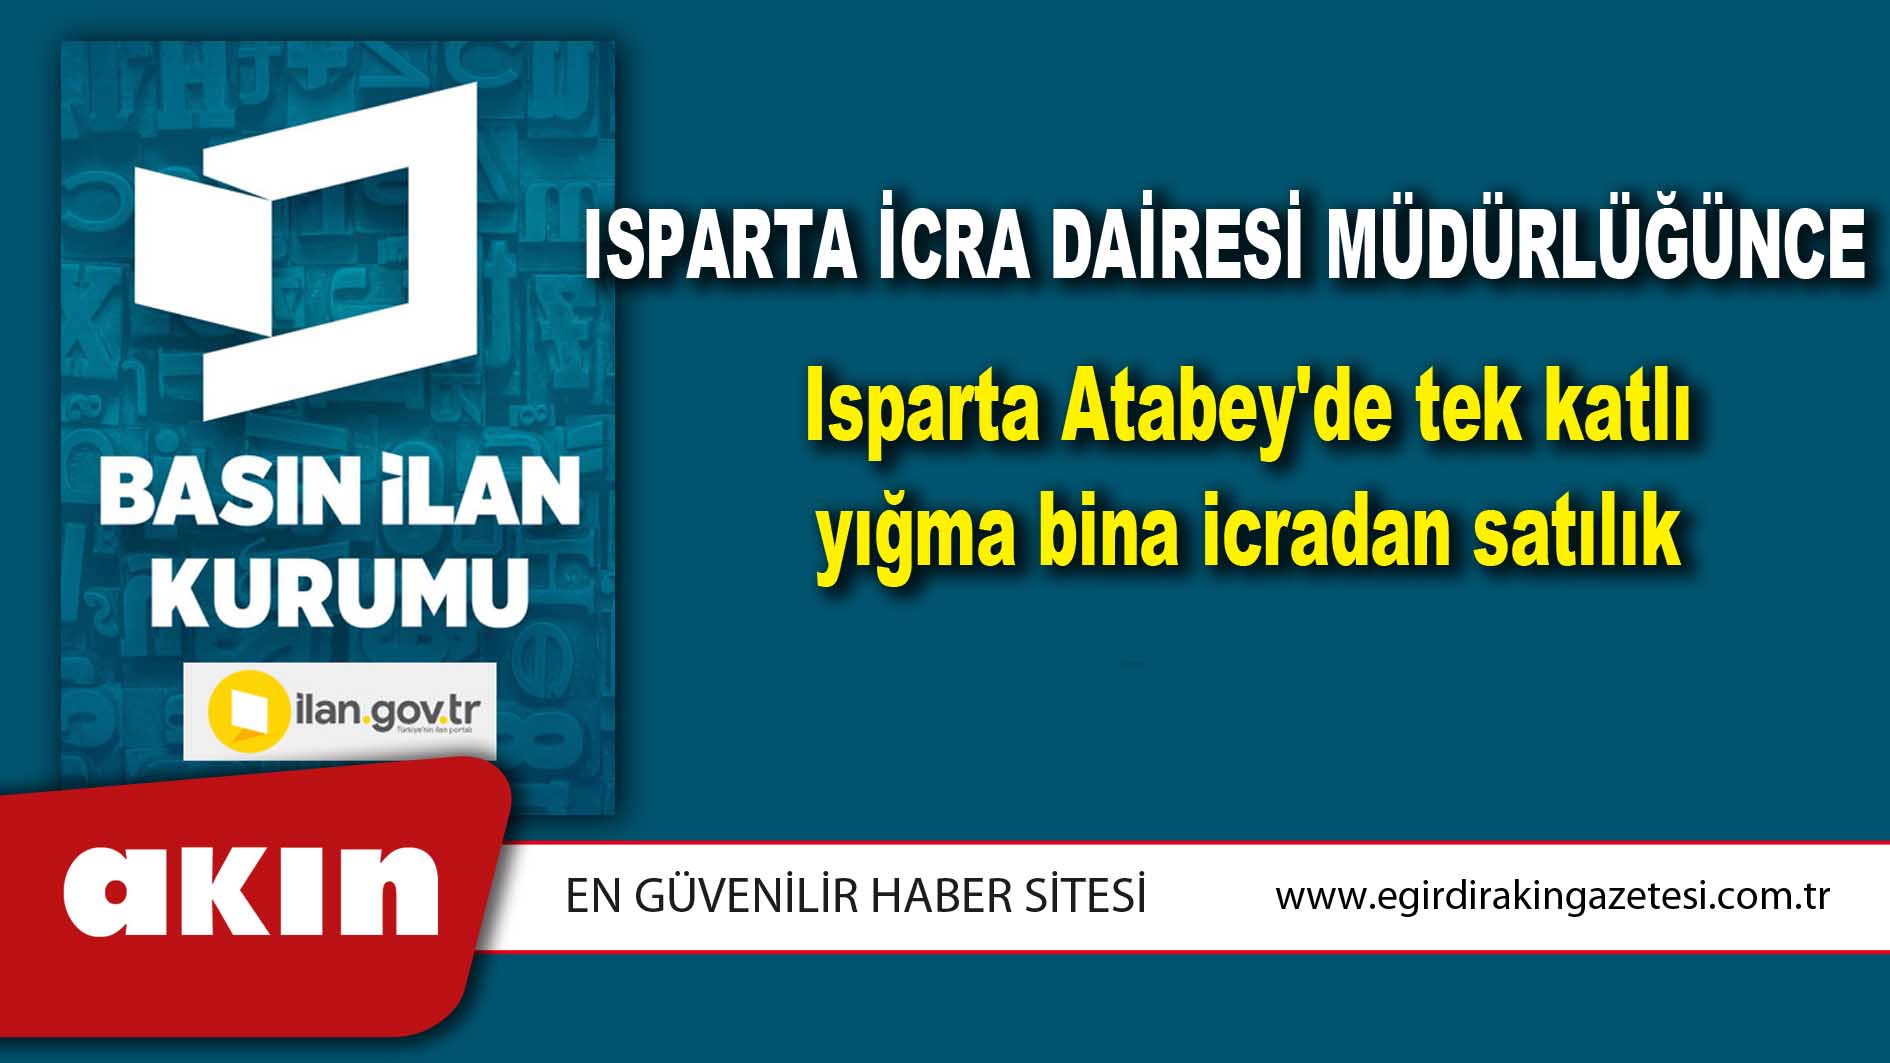 Isparta İcra Dairesi Müdürlüğünce Isparta Atabey'de tek katlı yığma bina icradan satılık